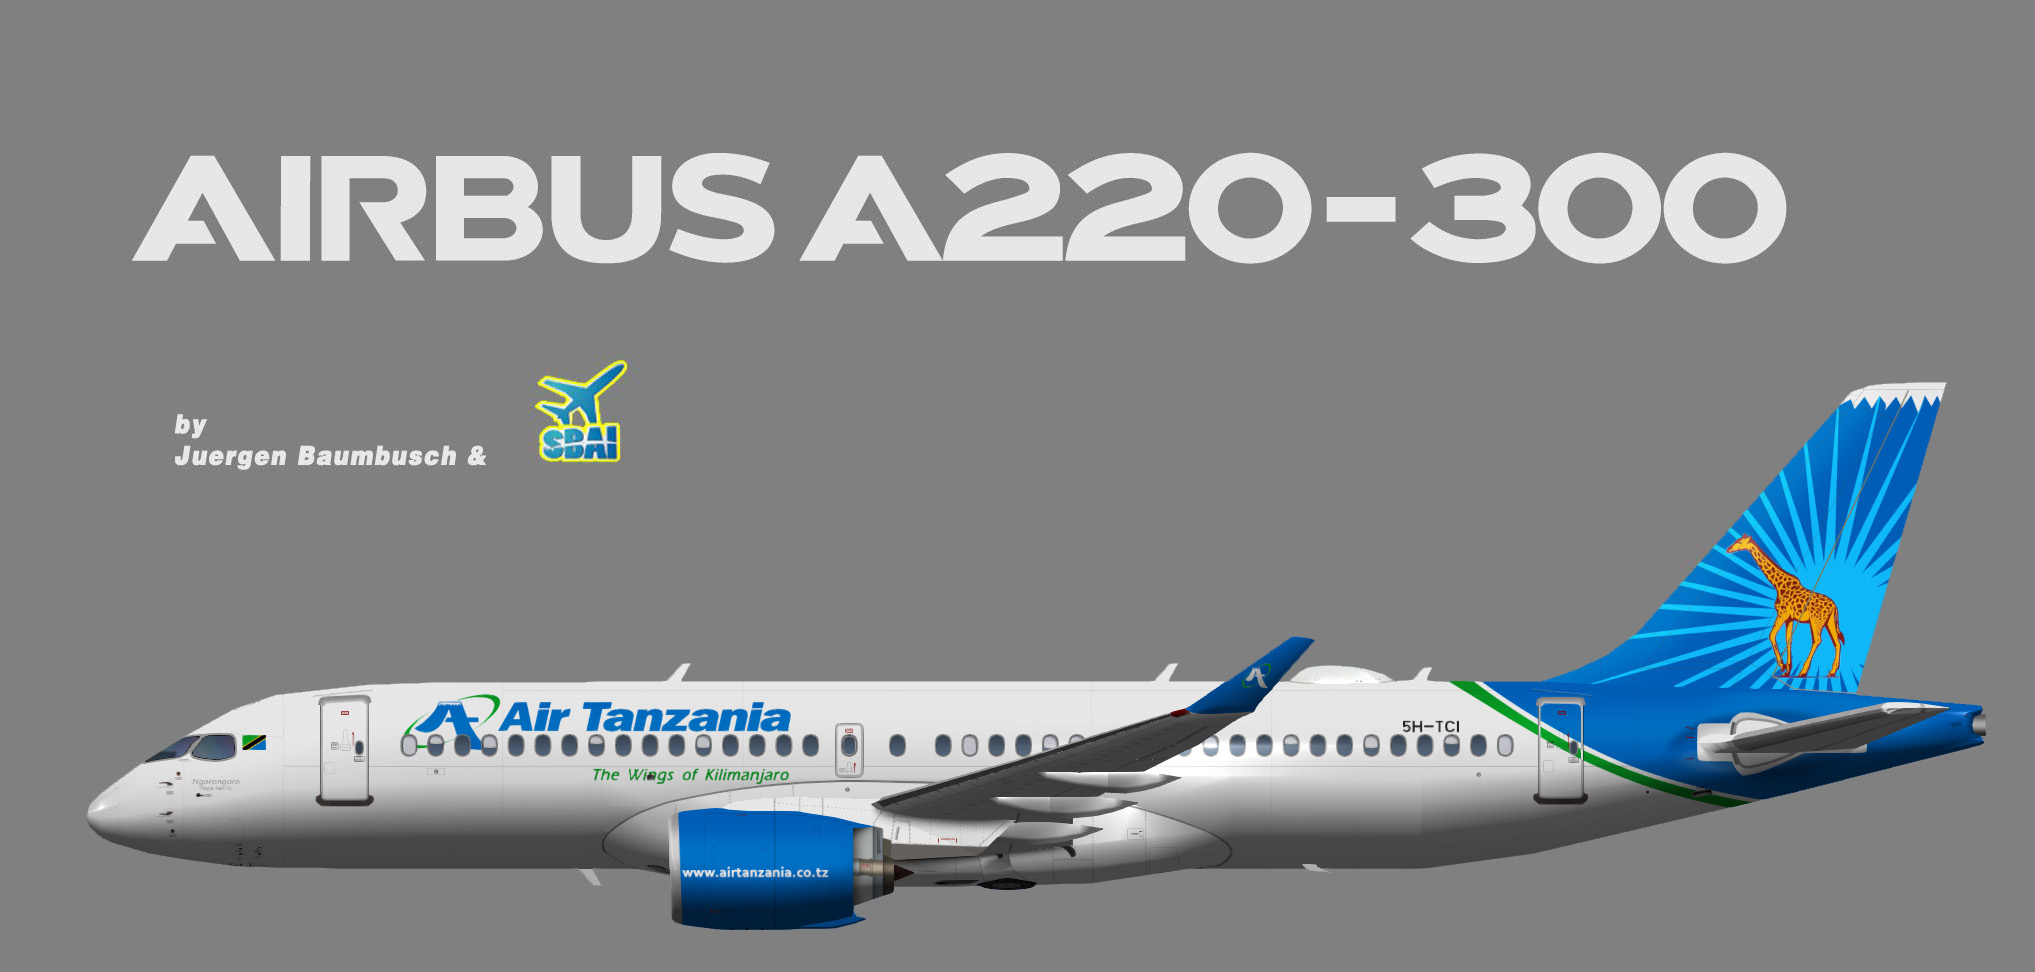 SBAI Air Tanzania Airbus A220-300